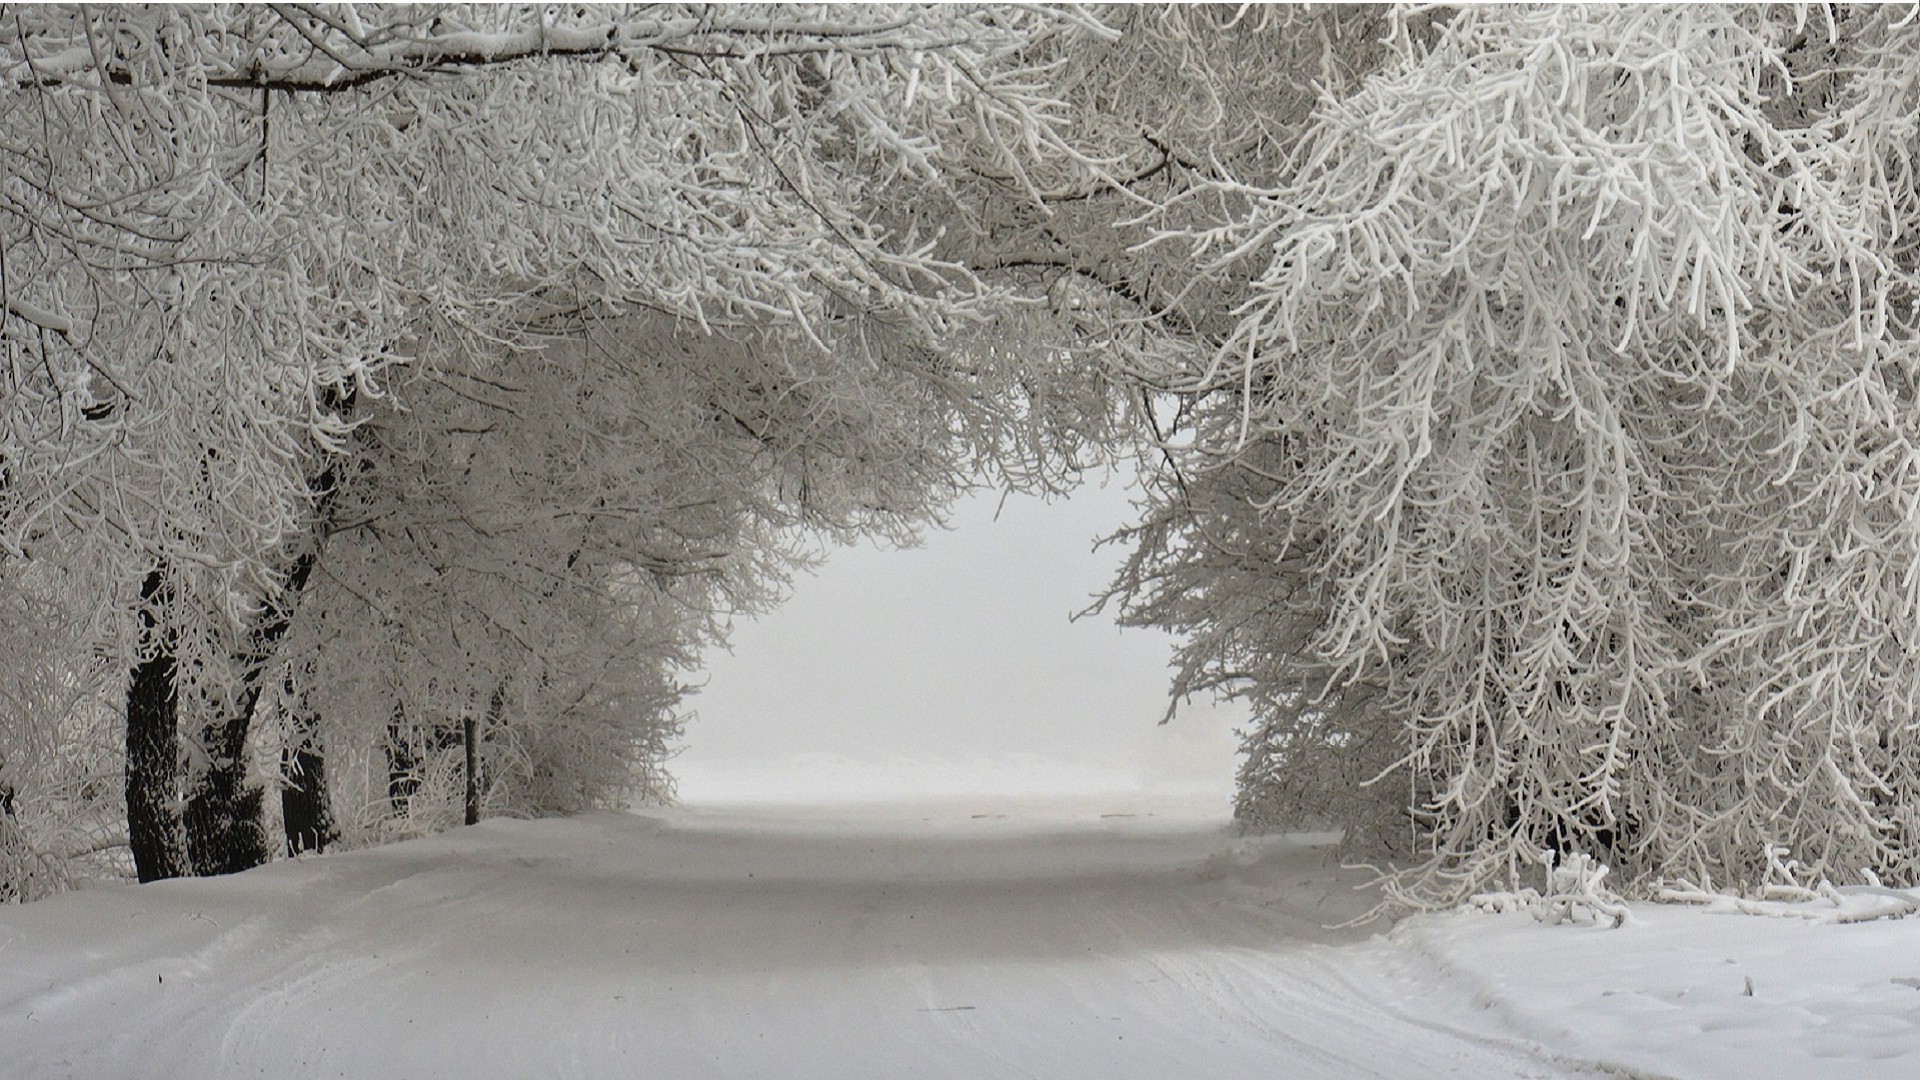 зима снег мороз холодная замороженные лед древесины погода пейзаж дерево туман сезон морозный природа снег-белый филиал пургу сцена